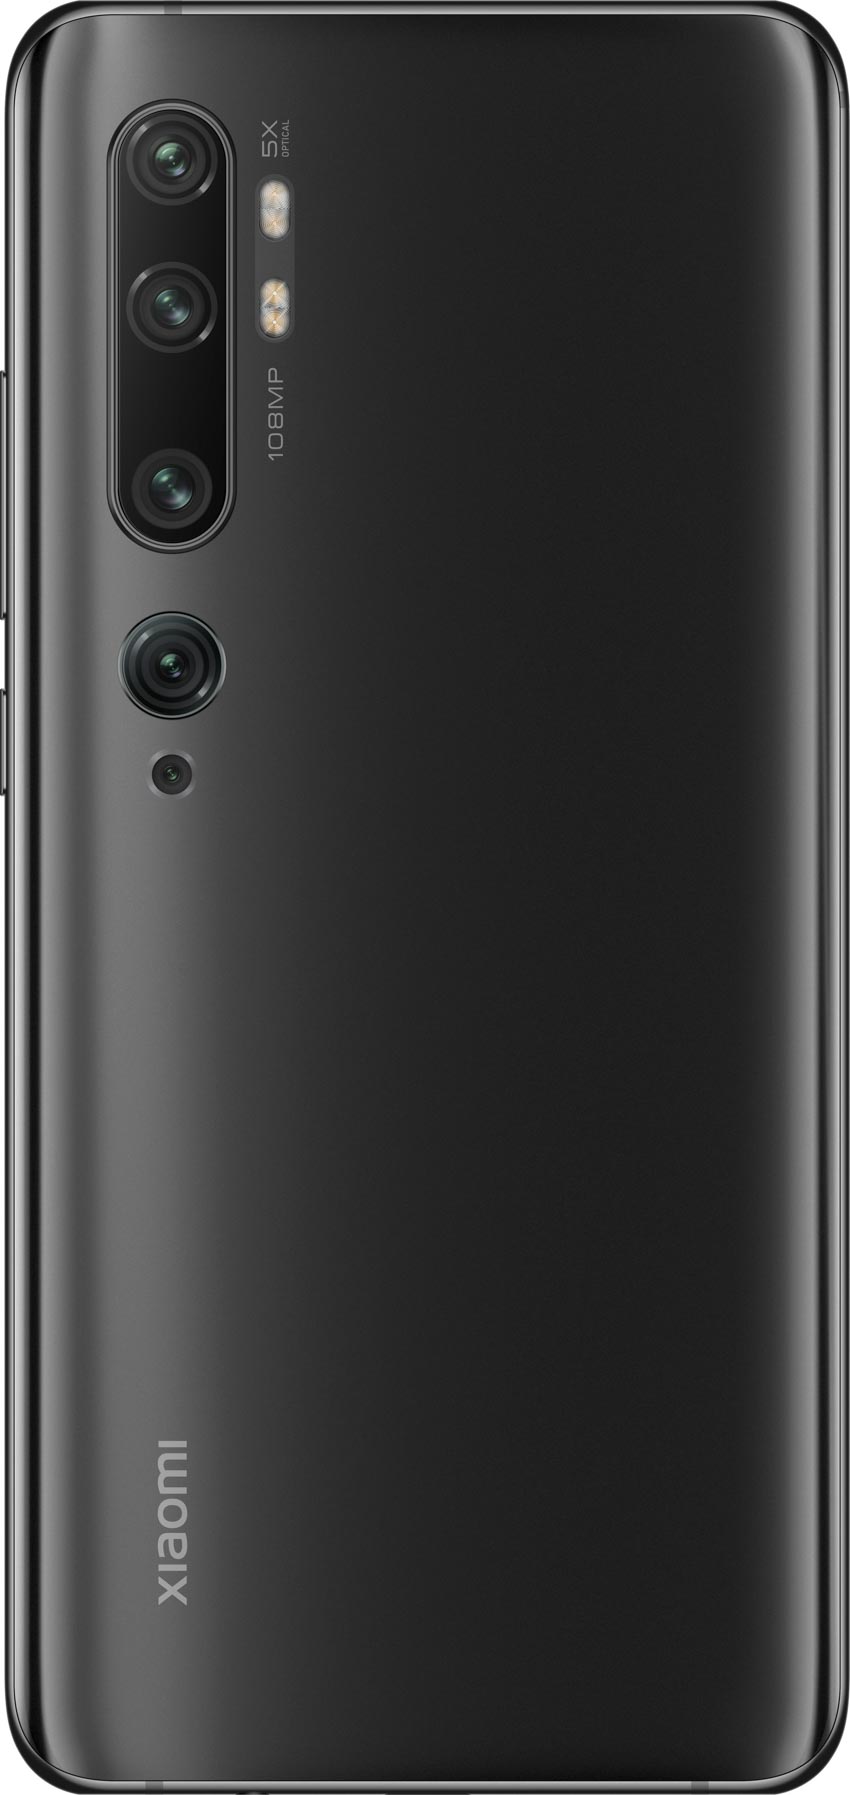 Xiaomi mang điện thoại cao cấp mới nhất Mi Note 10 đến Việt Nam - 8